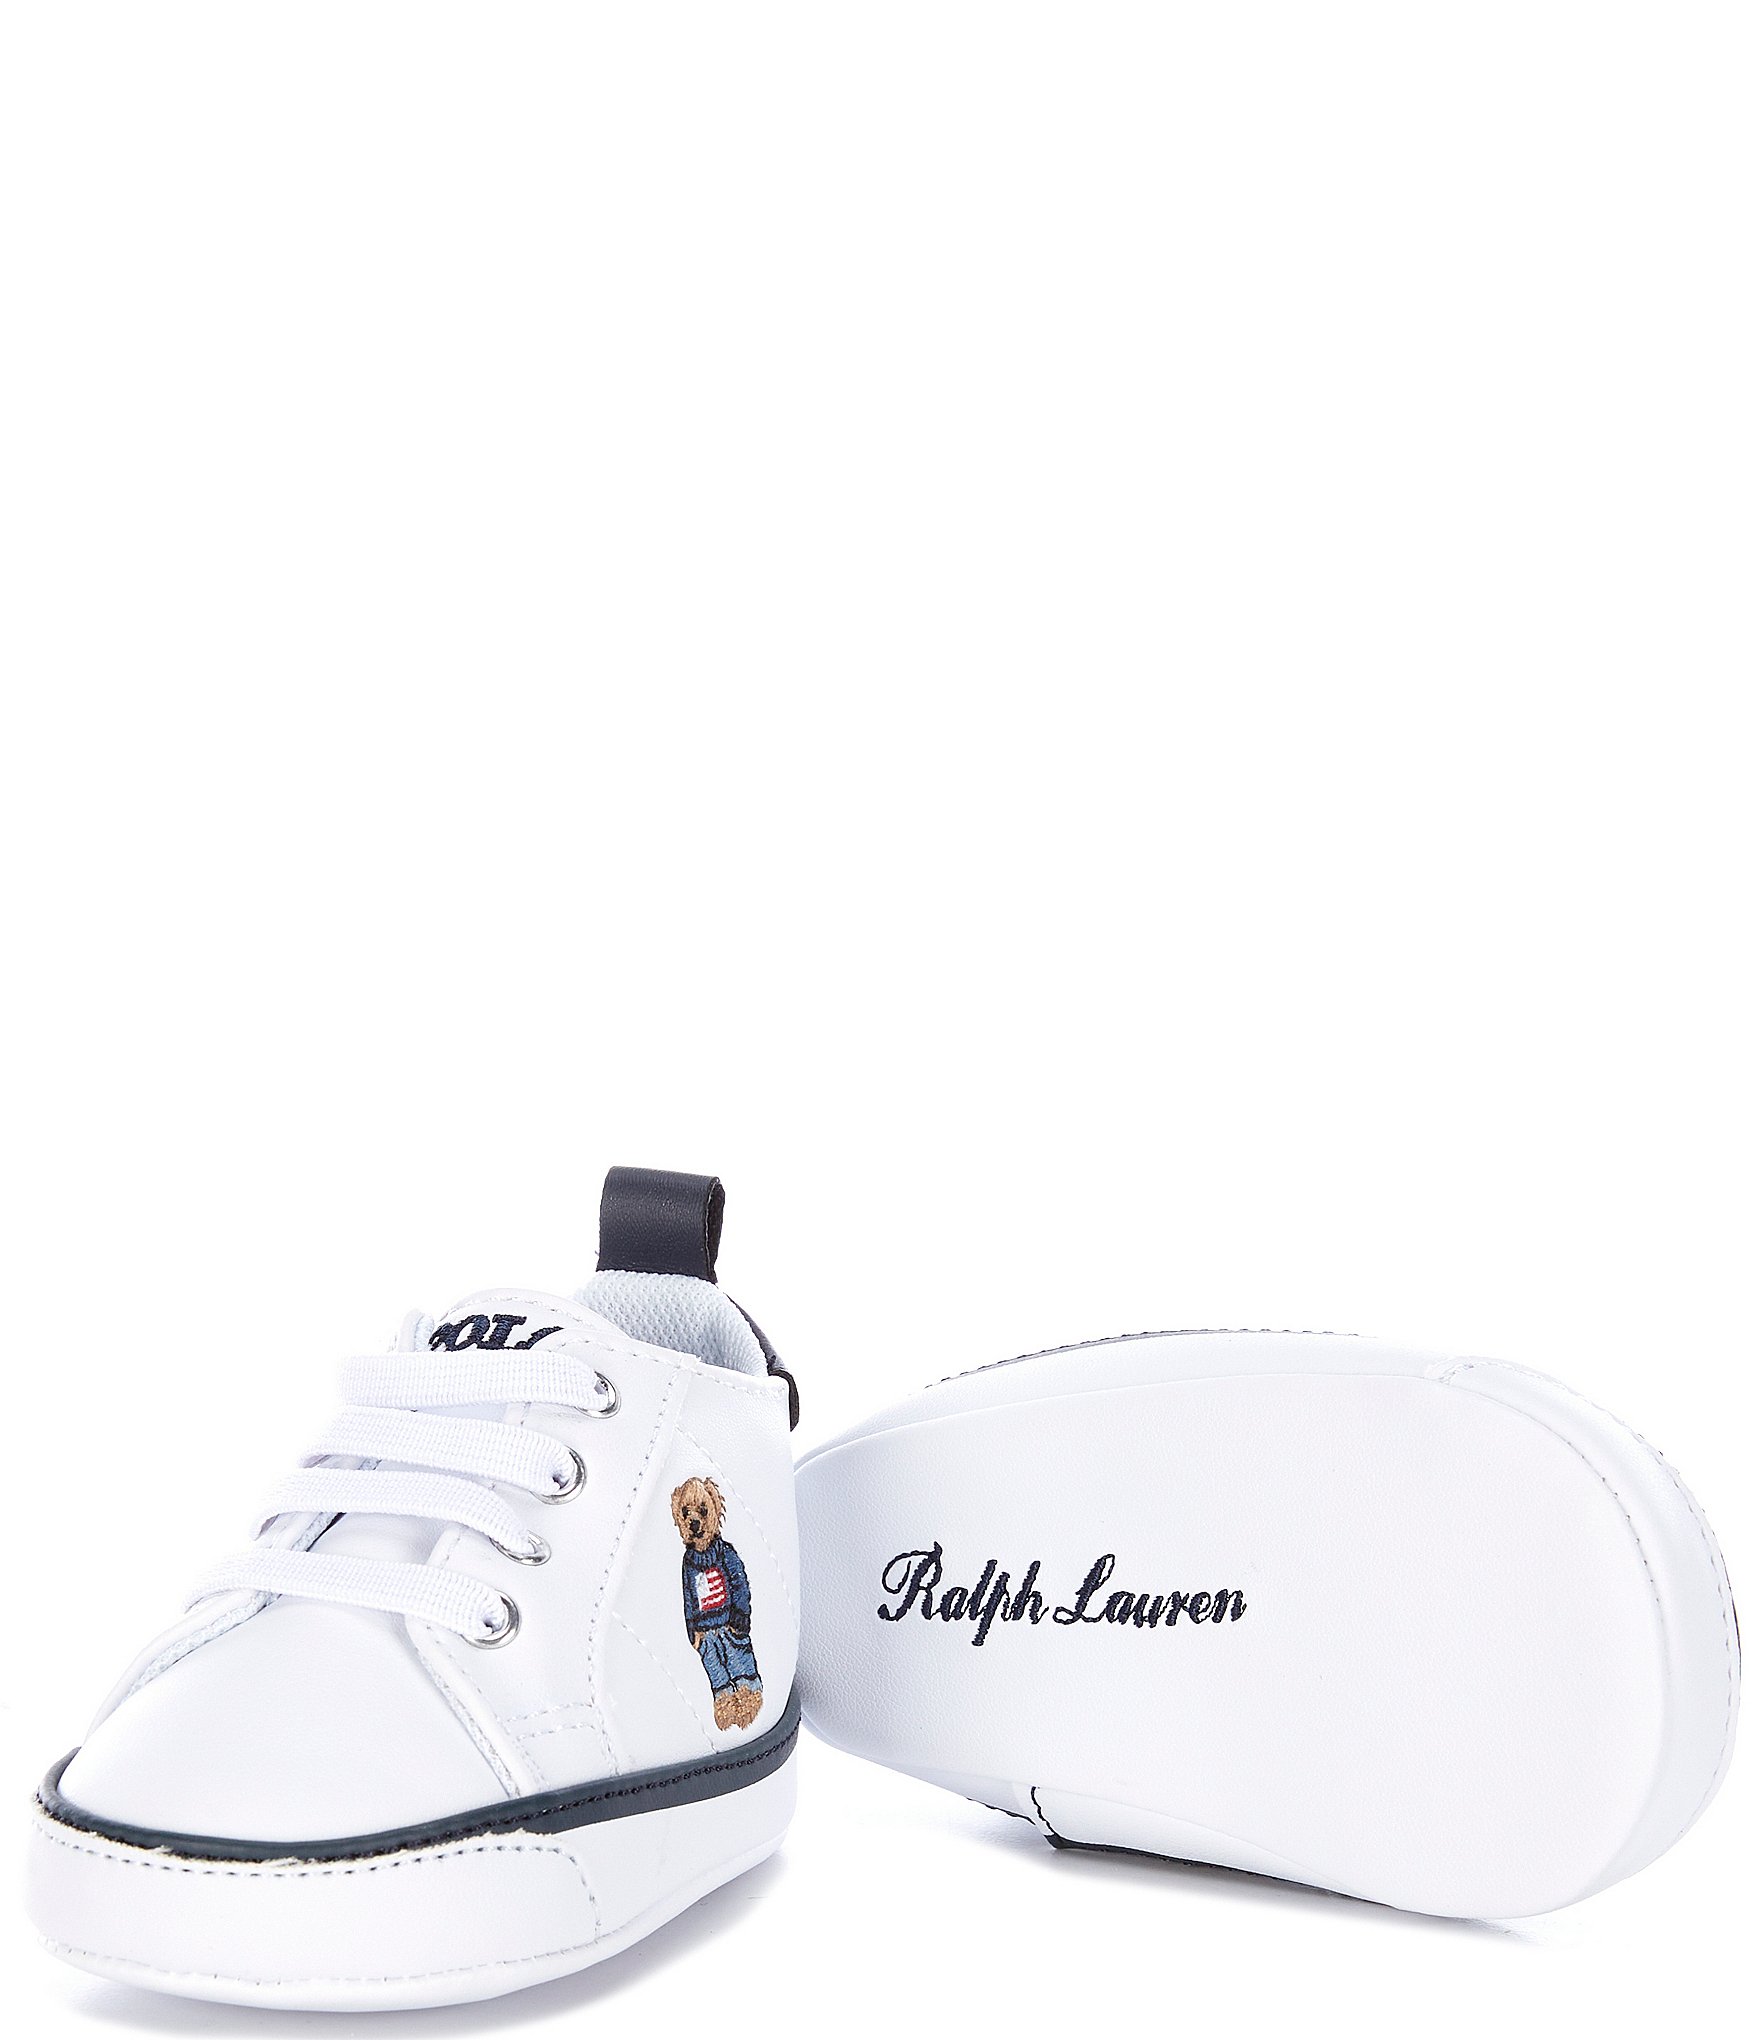 Polo Ralph Lauren Shoes | Dillard's